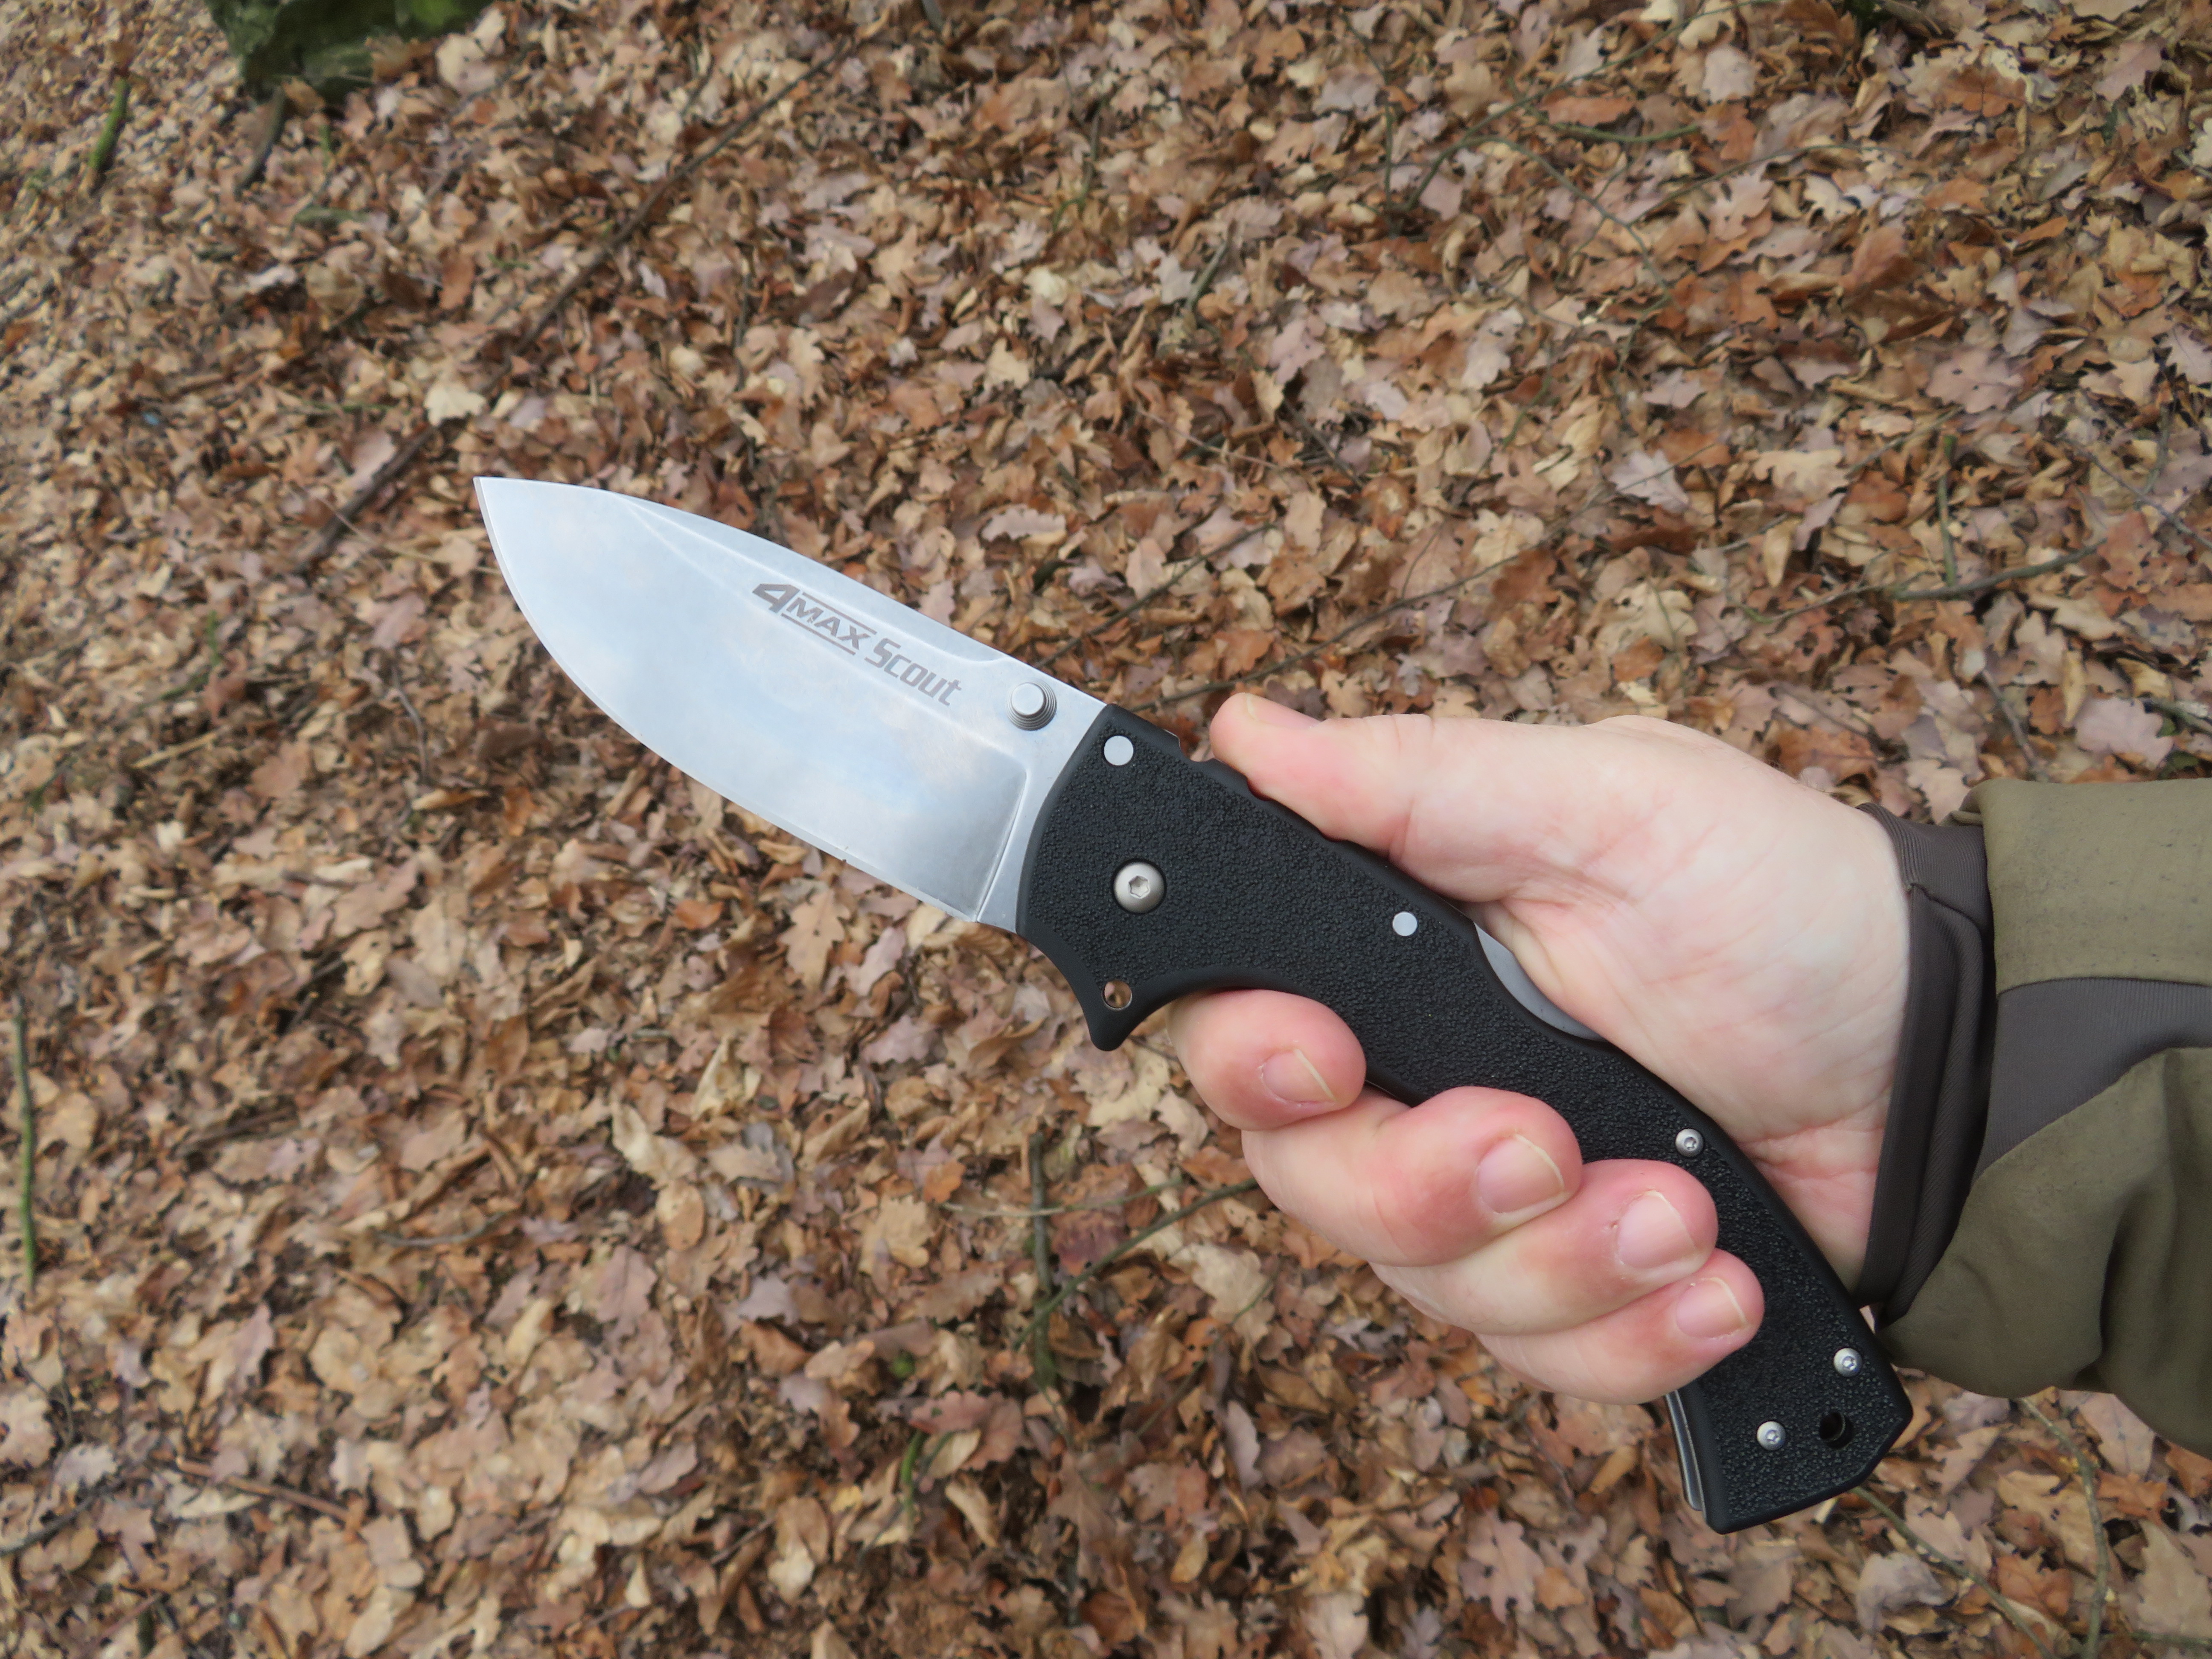 Rukojeť nože 4-Max Scout je vyrobena z materiálu Griv-Ex, který se vyznačuje svou odolnosti.